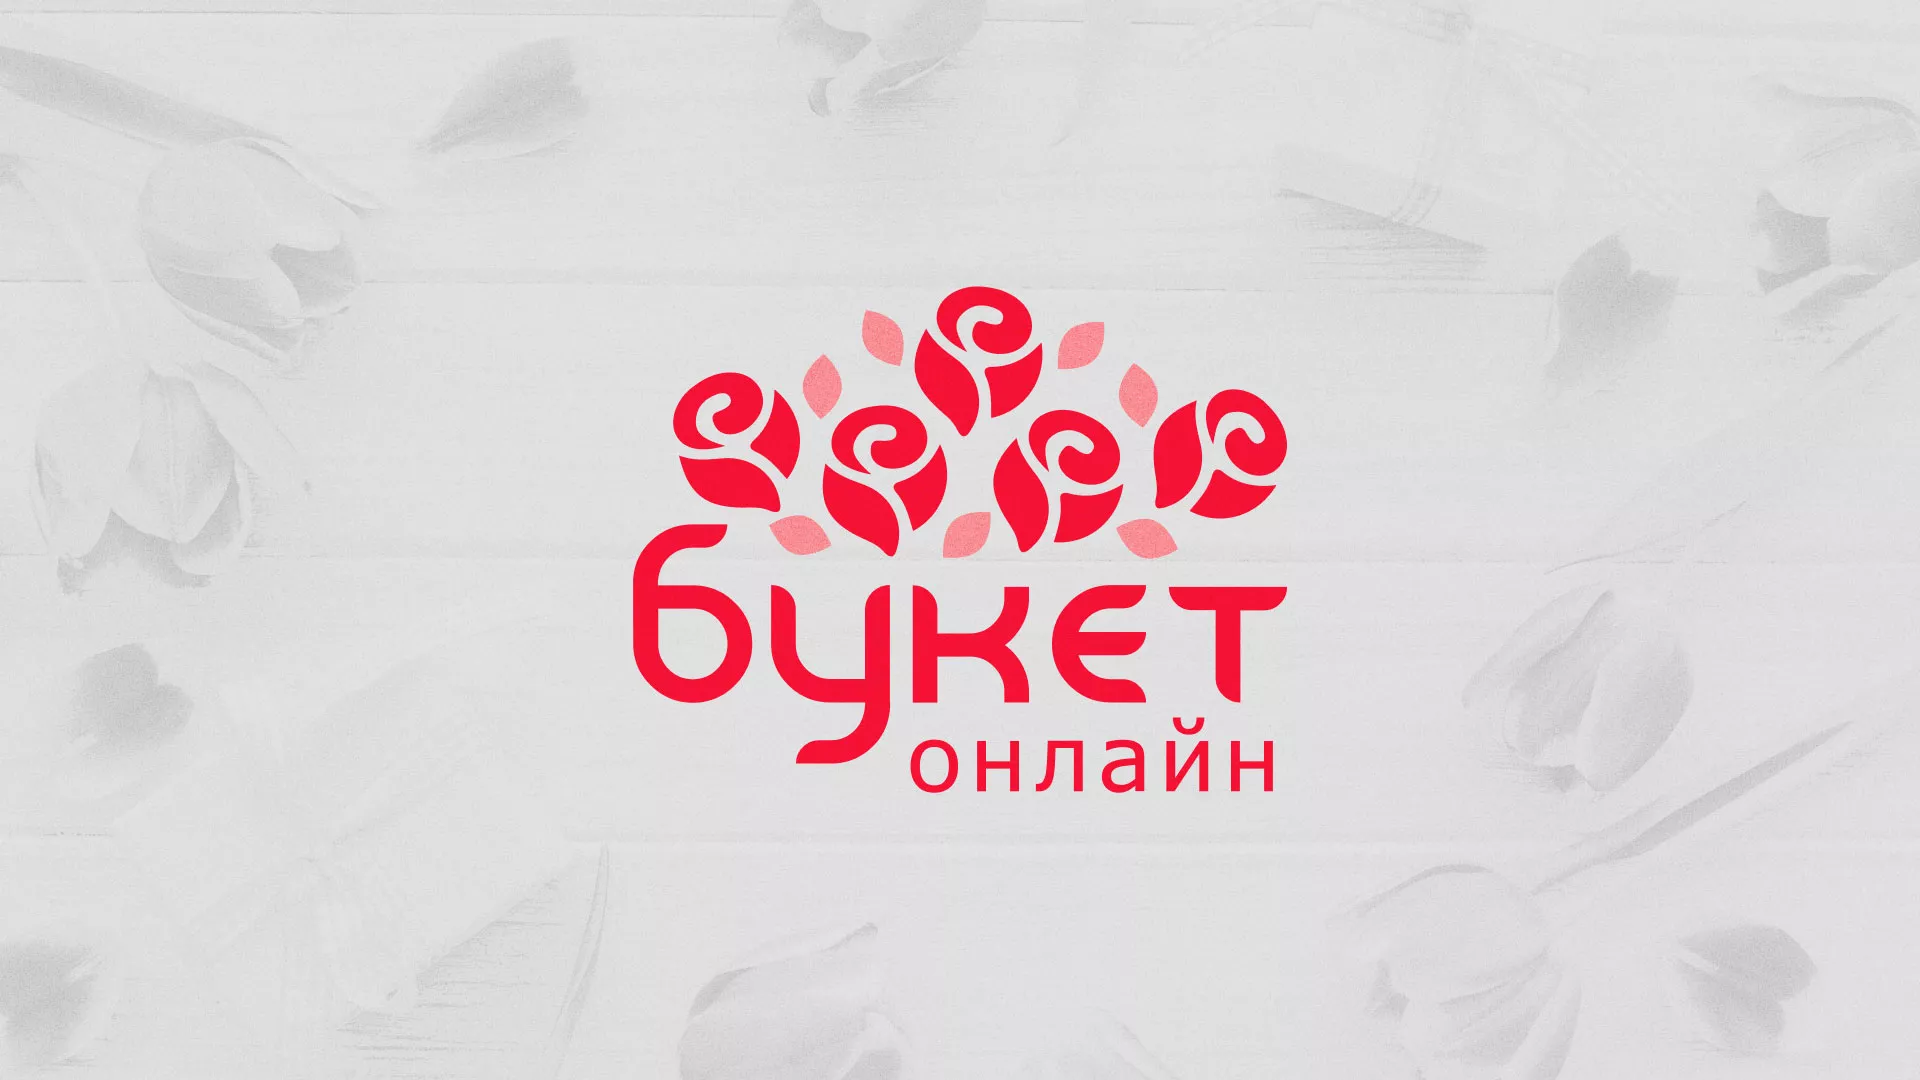 Создание интернет-магазина «Букет-онлайн» по цветам в Балаково